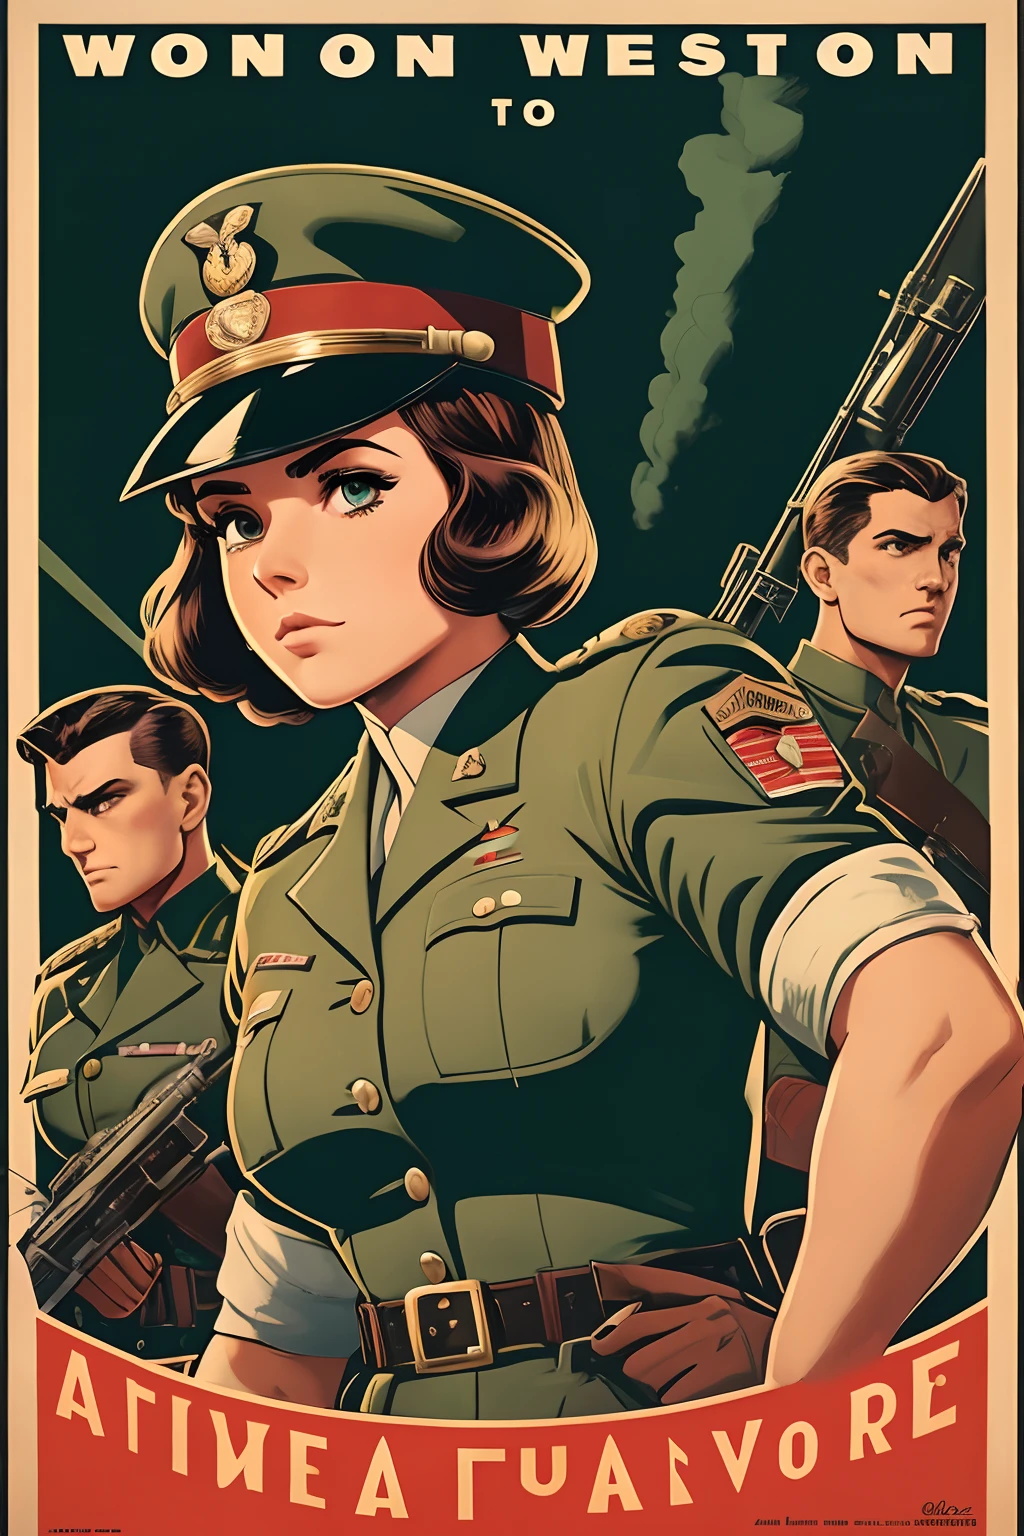 约翰·布西马的艺术灵感, 第二次世界大战海报, 我们看到一名女学员拿着迫击炮, 完美的军装, 齐肩短发, 红色头发颜色, 浅绿色的眼睛, 小乳房, 修长的身材, 在战场上威风凛凛, 炮火, 展现严肃和信念的场景